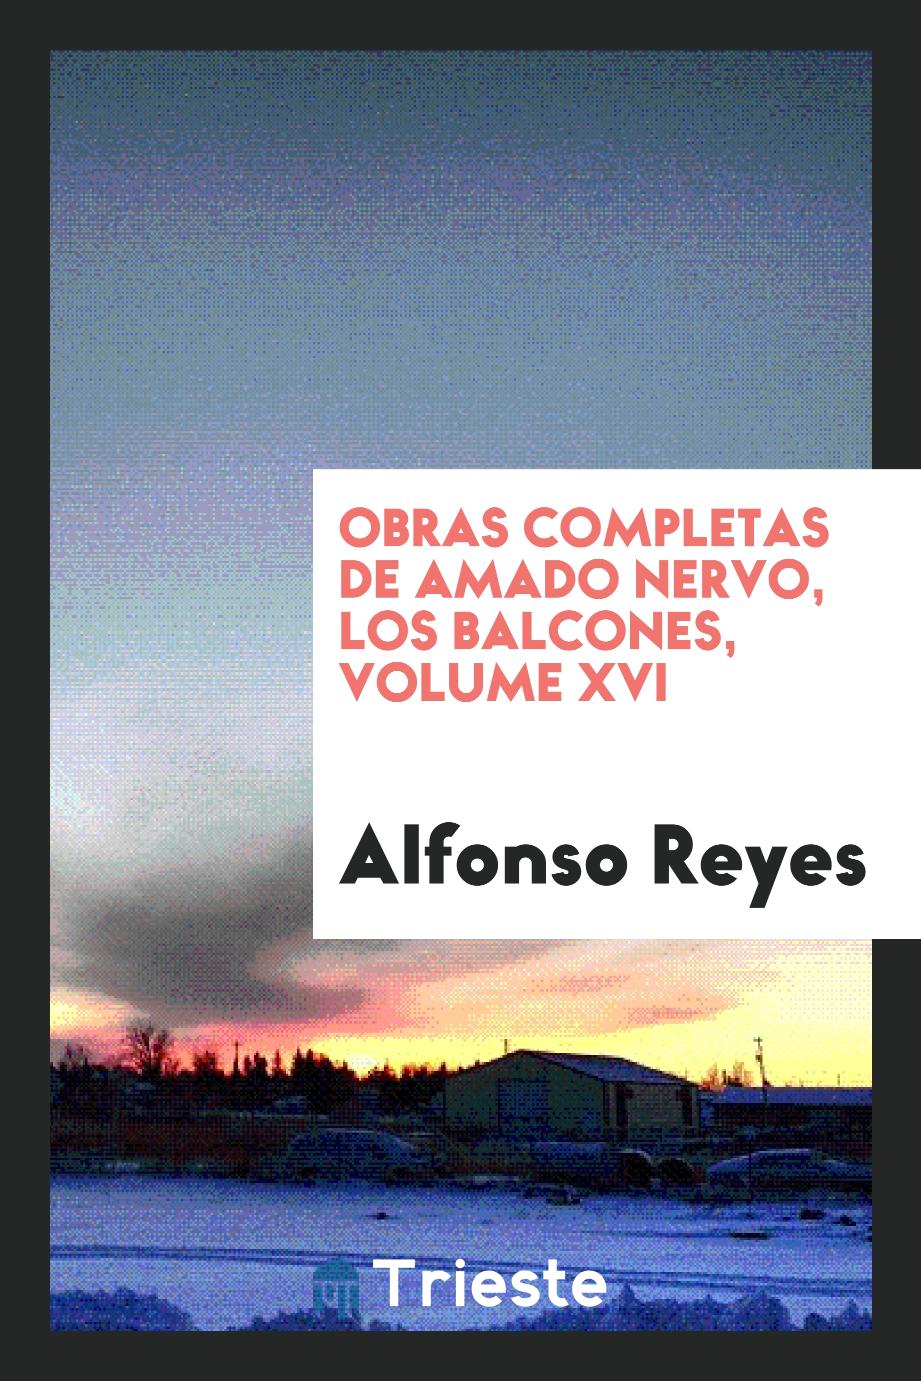 Obras completas de Amado Nervo, Los Balcones, Volume XVI